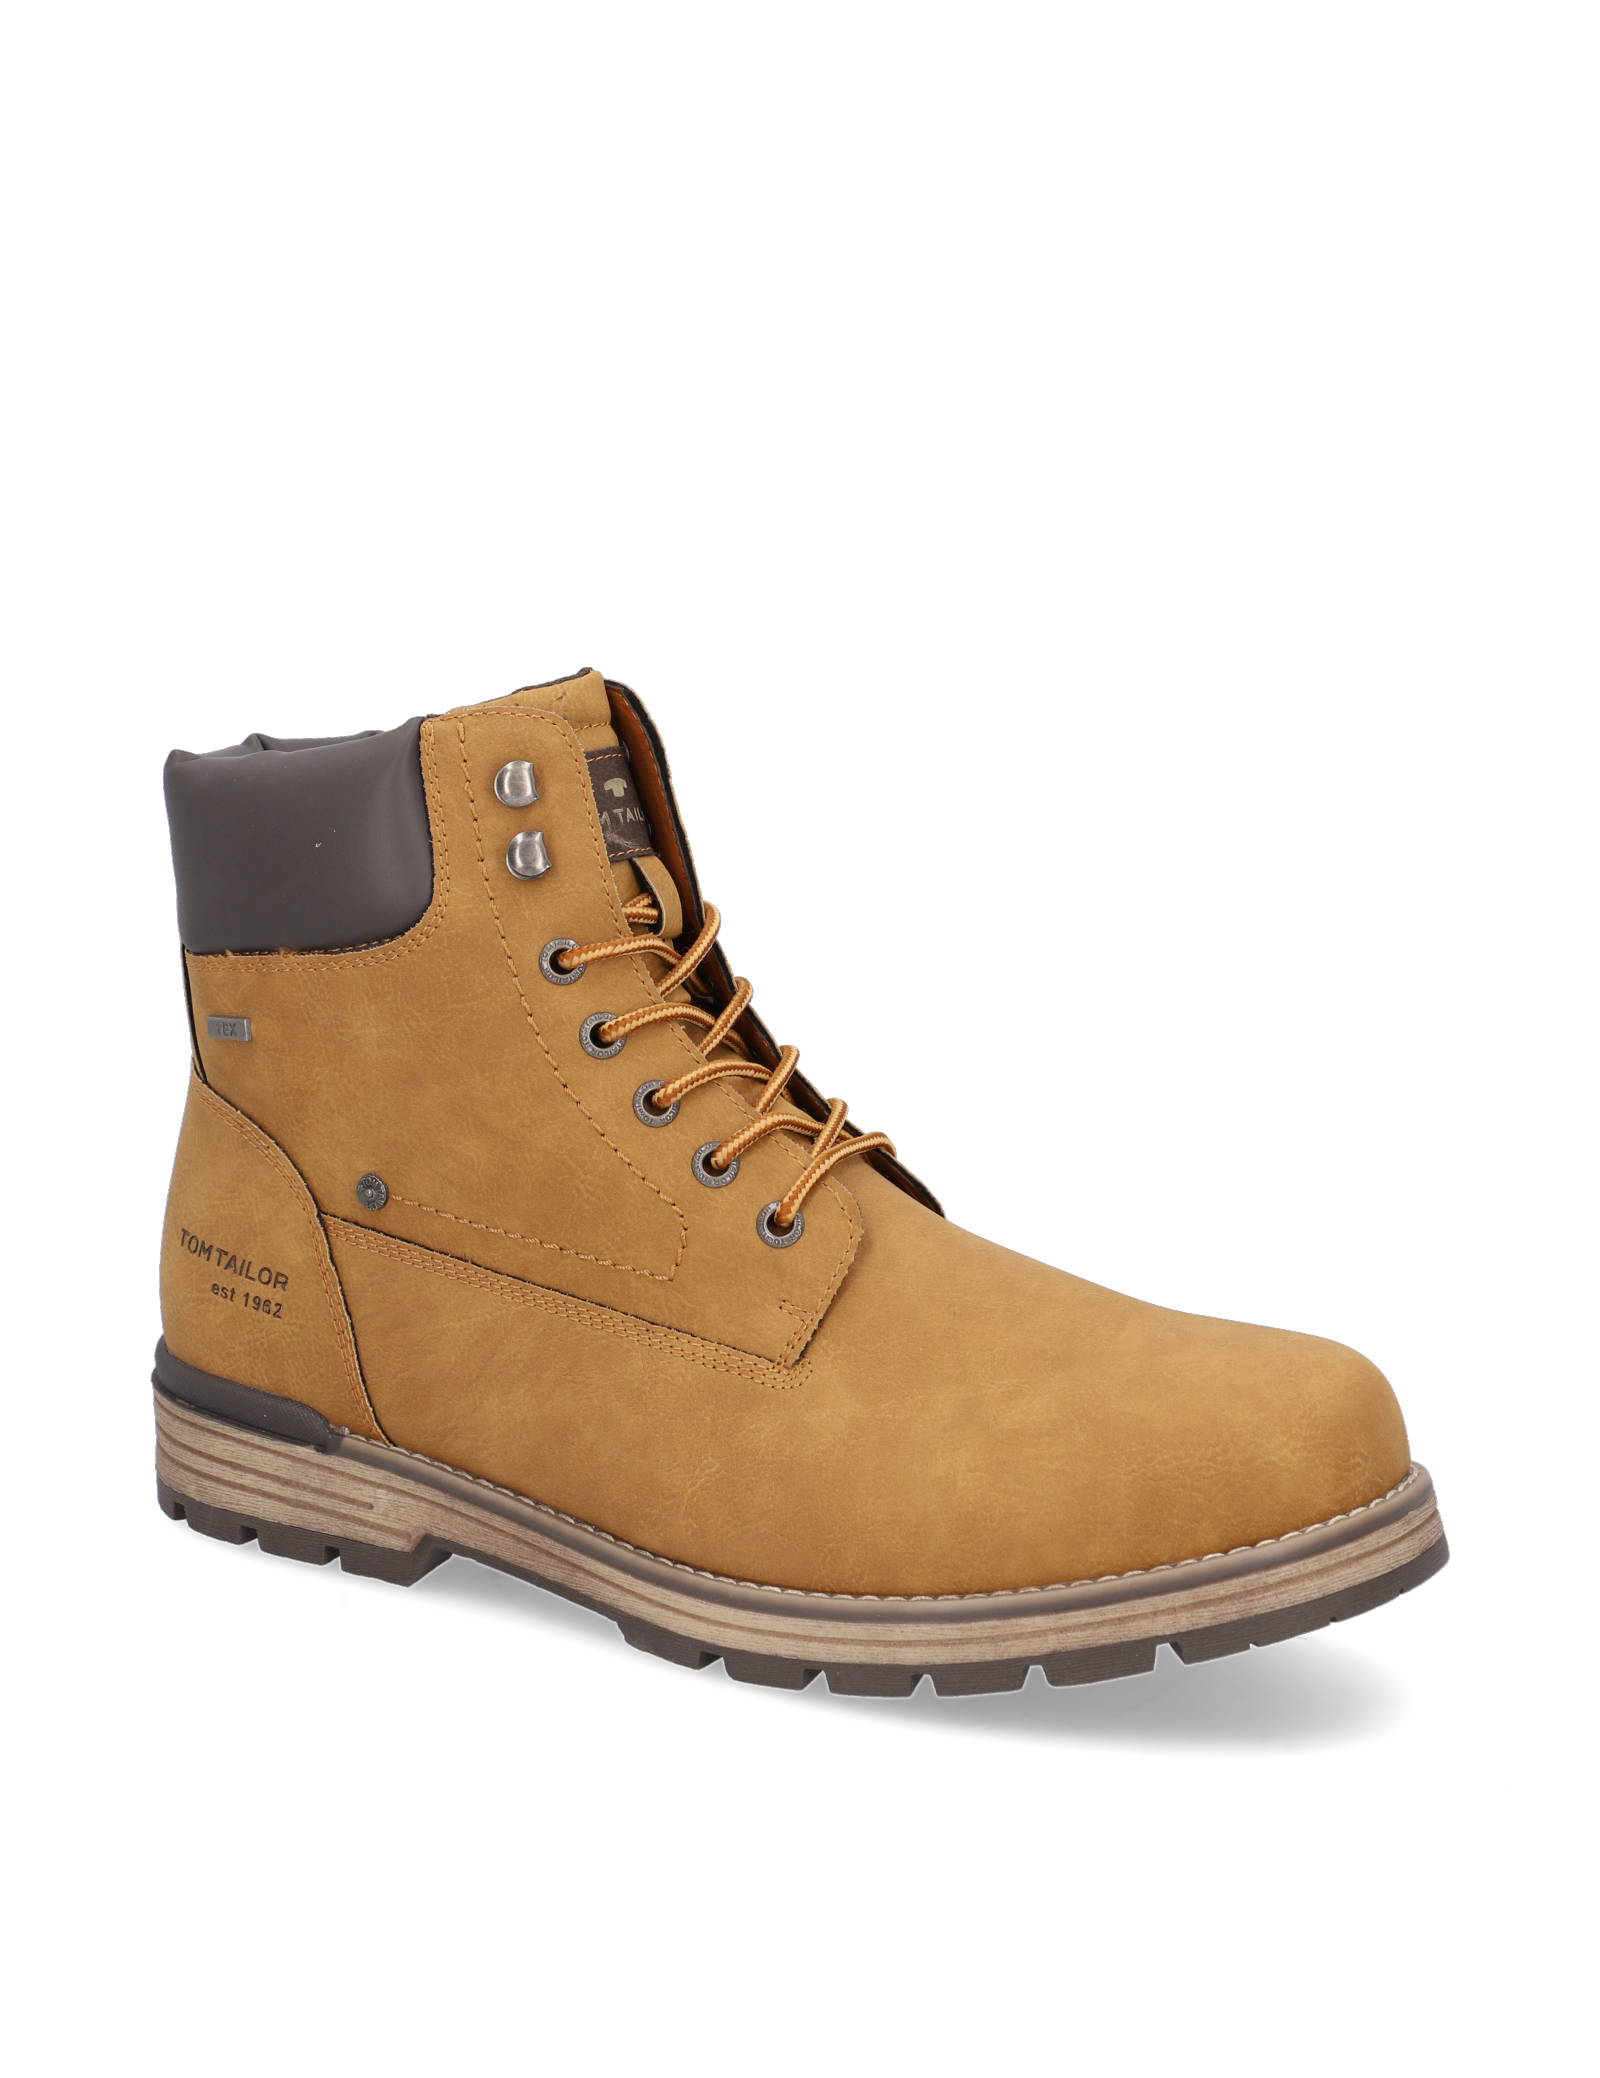 

Tom Tailor Boots/Členková obuv